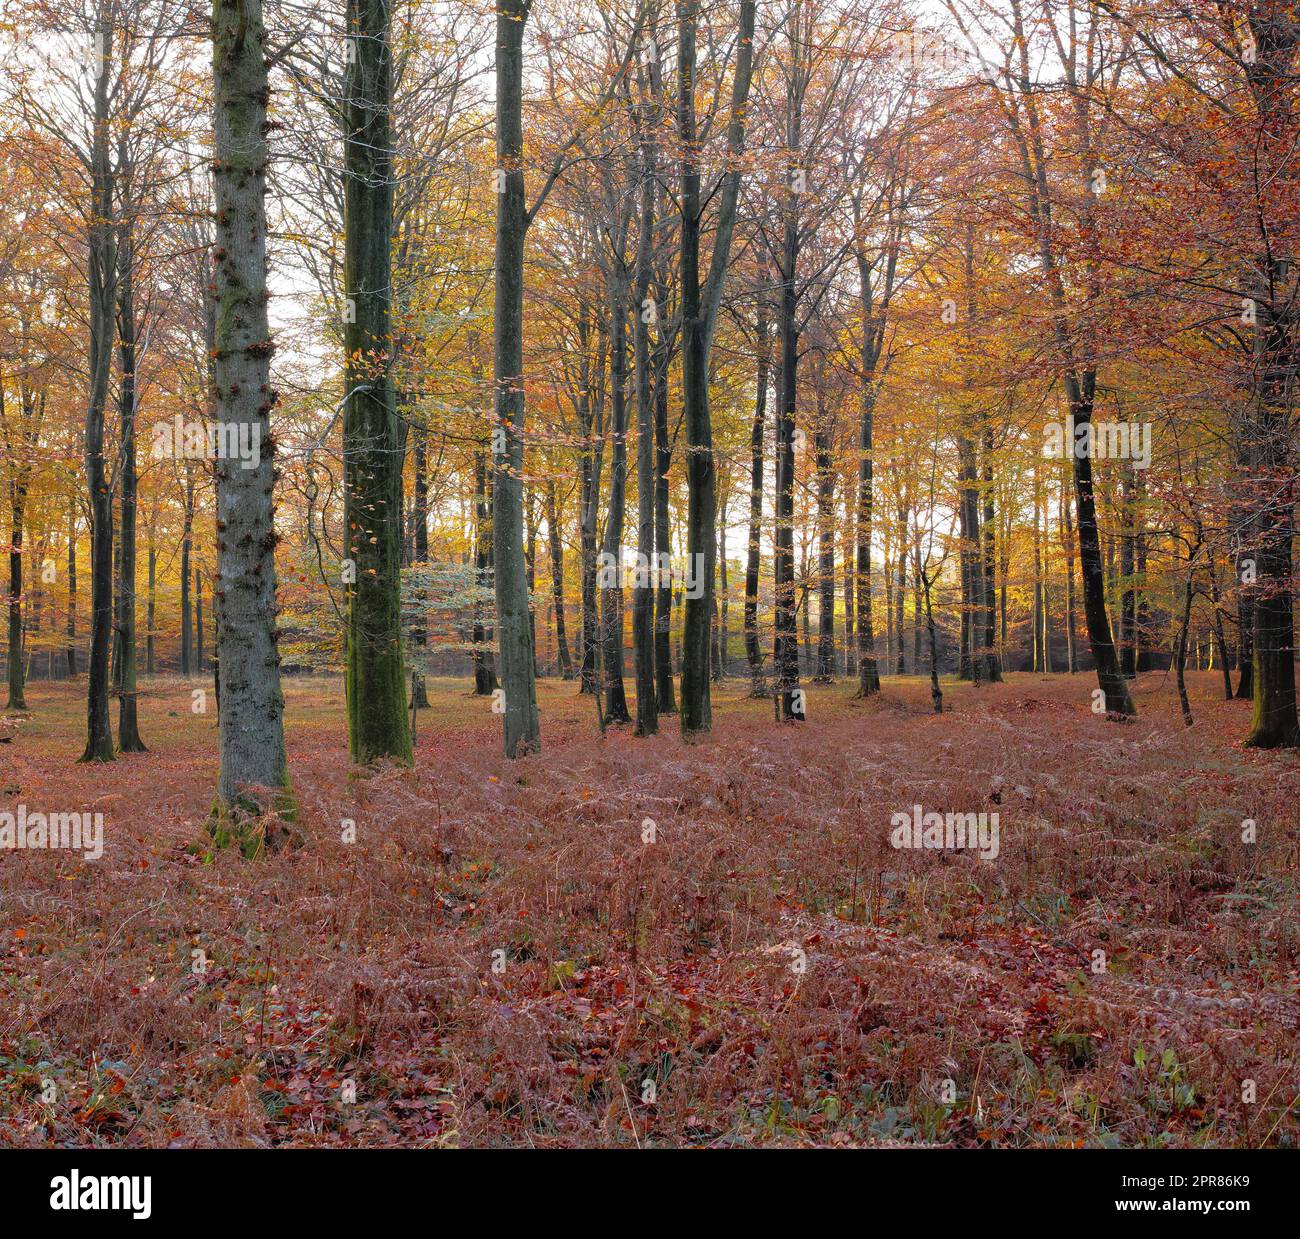 Landschaftsblick auf Herbstkiefern-, Tannen- oder Zedernbäume, die in ruhigen Wäldern Schwedens wachsen. Trockene rote und braune Äste und Gras in einem wilden und abgelegenen Nadelwald zum Schutz der Umwelt Stockfoto